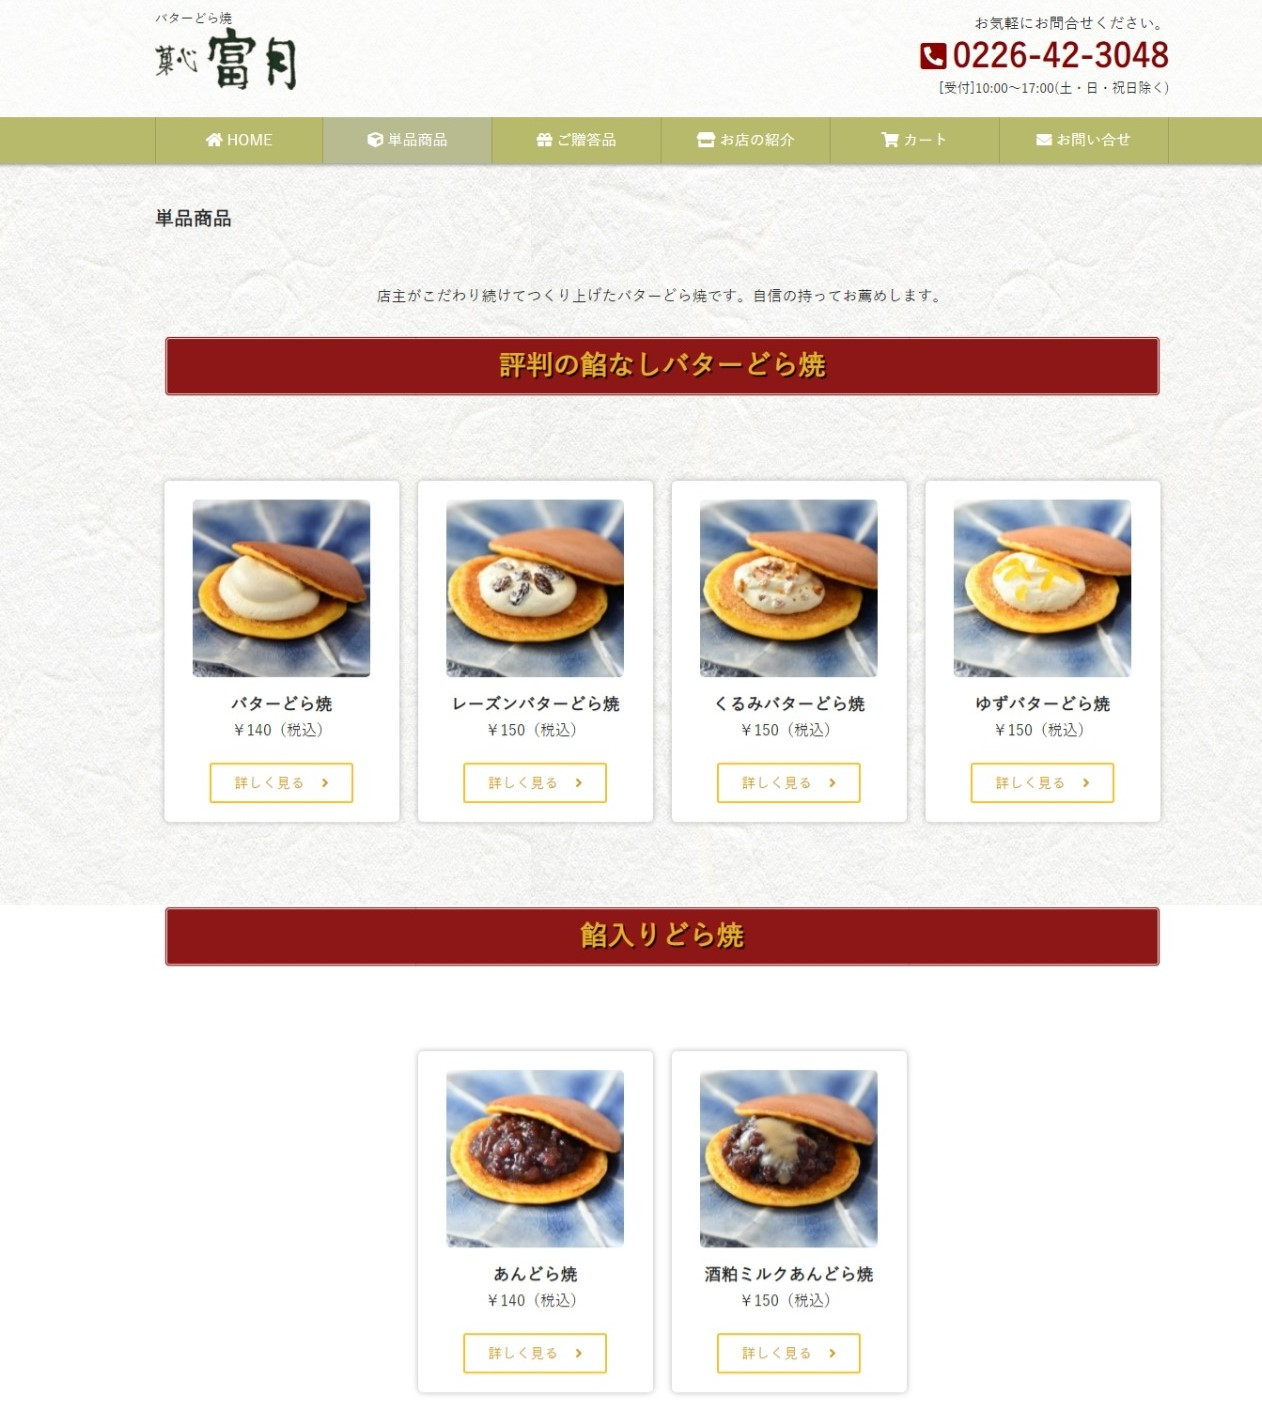 当店の看板商品「バターどら焼」がお買い物できるホームページ開設しました！